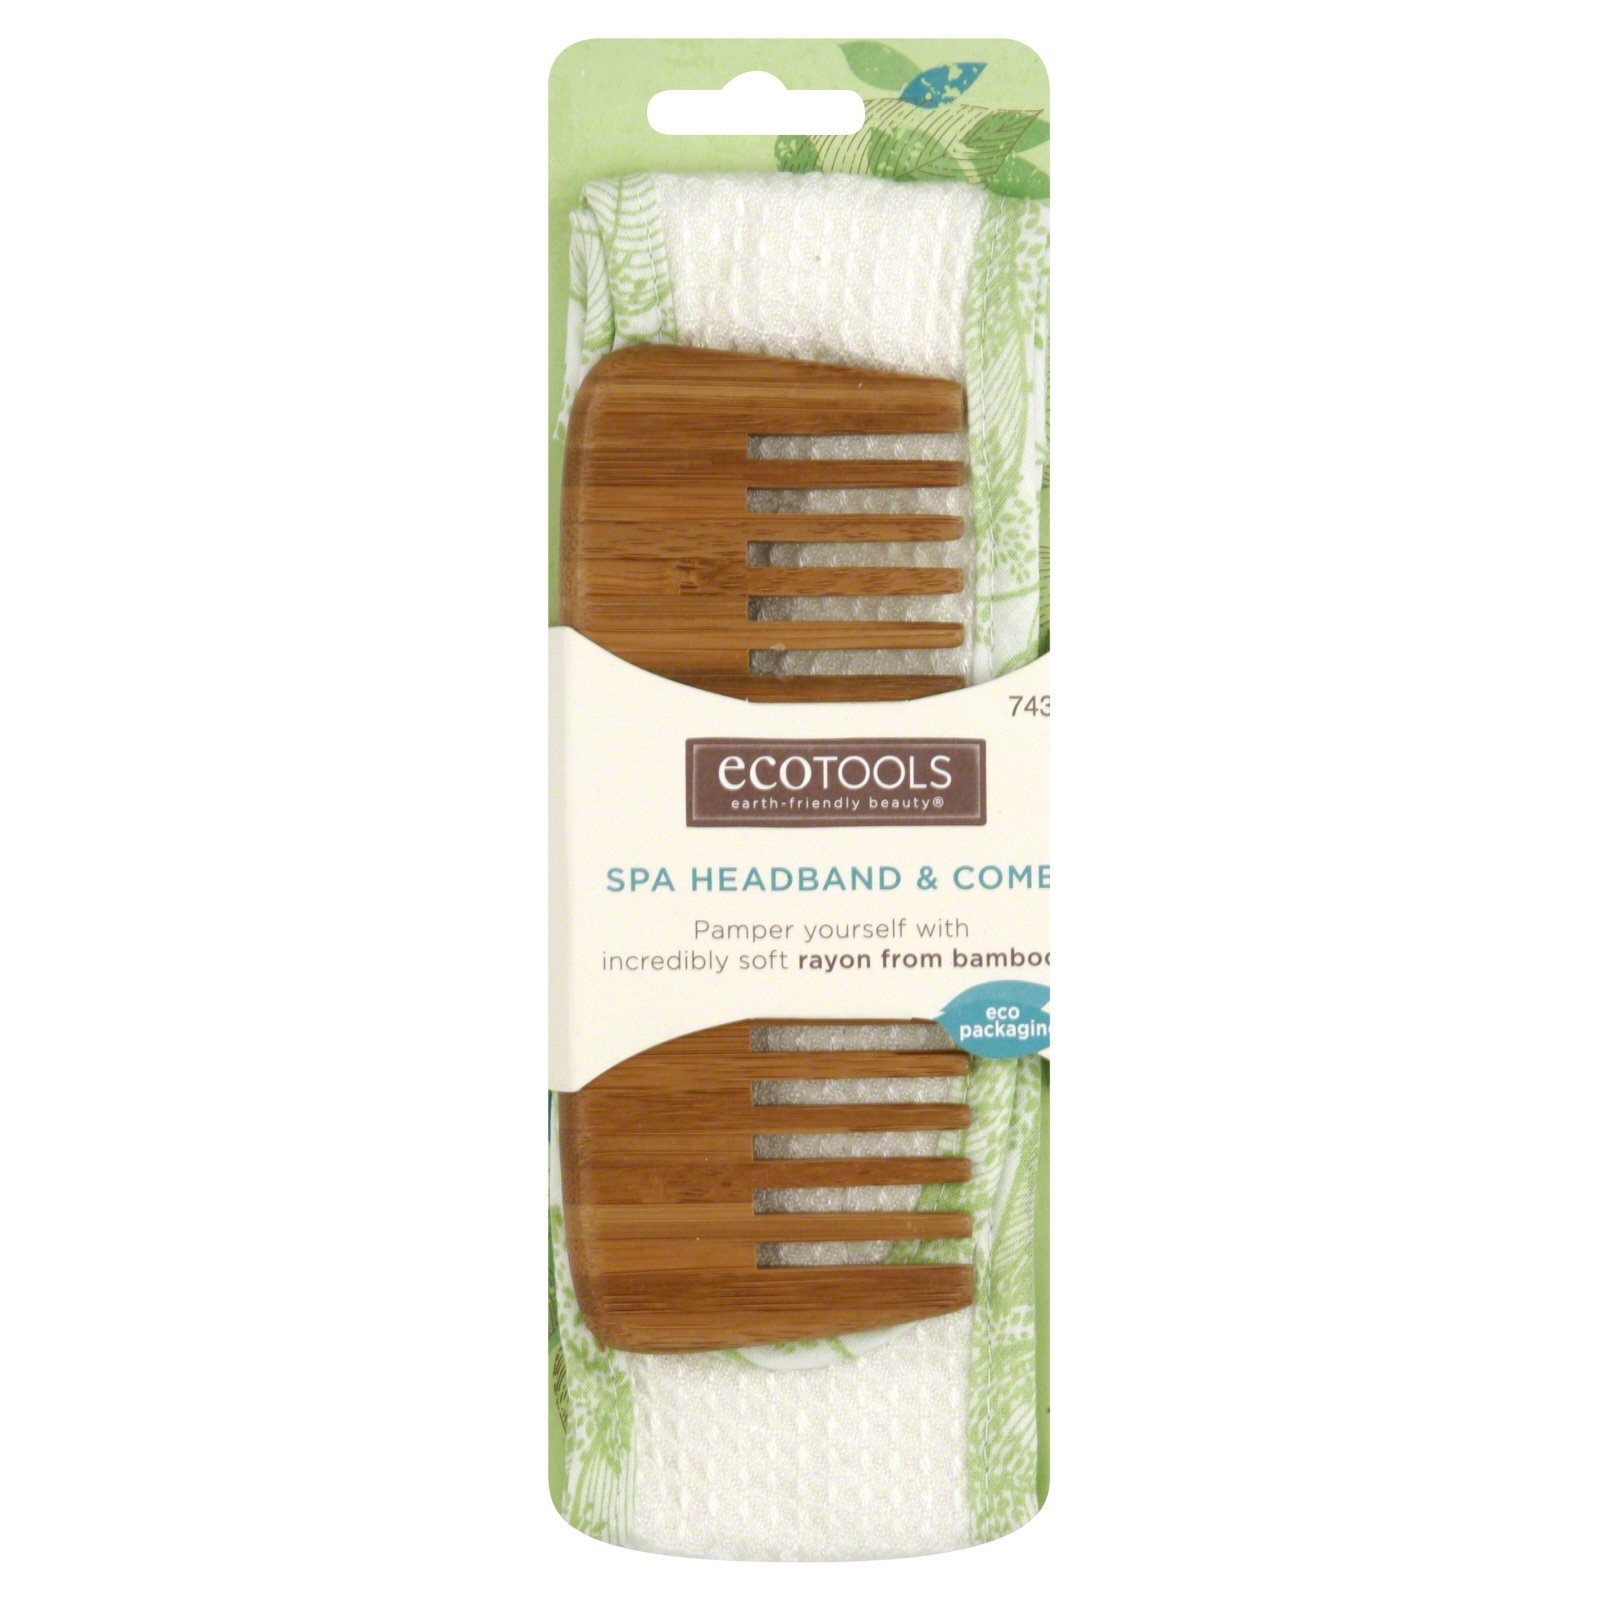 EcoTools Spa Headband & Comb